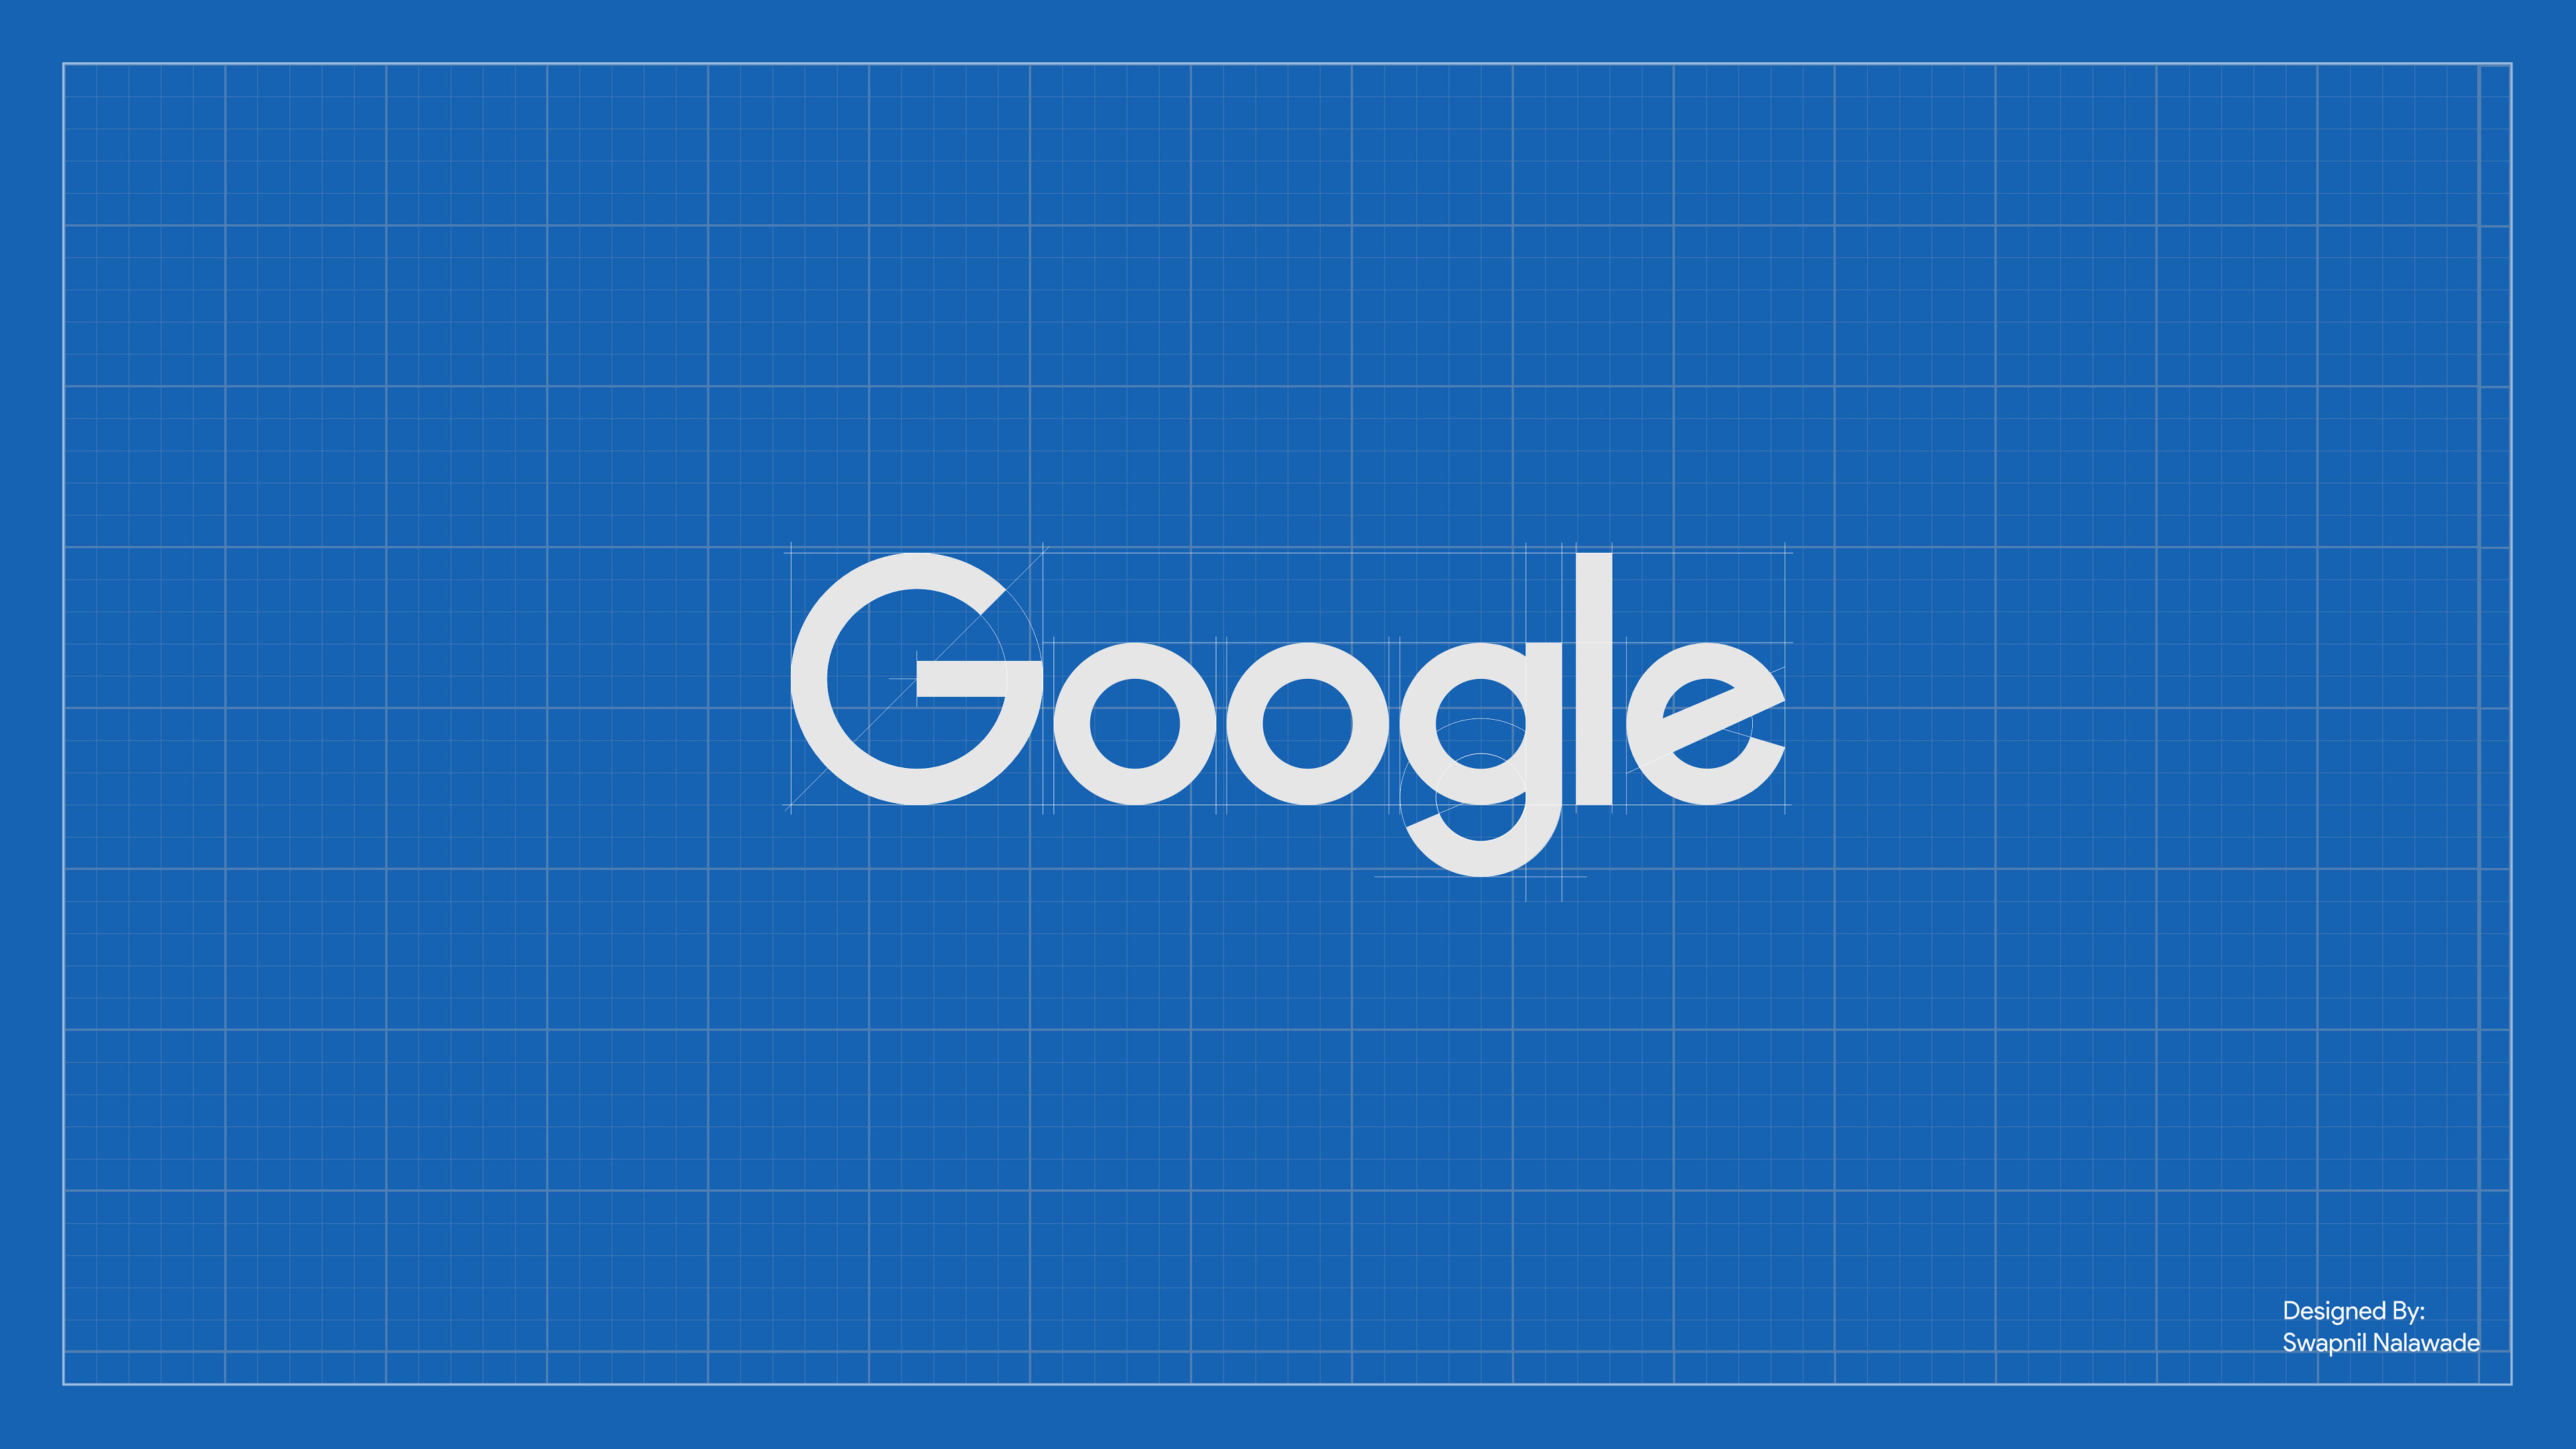 google wallpaper para pc,azul,texto,fuente,azul eléctrico,tiempo de día